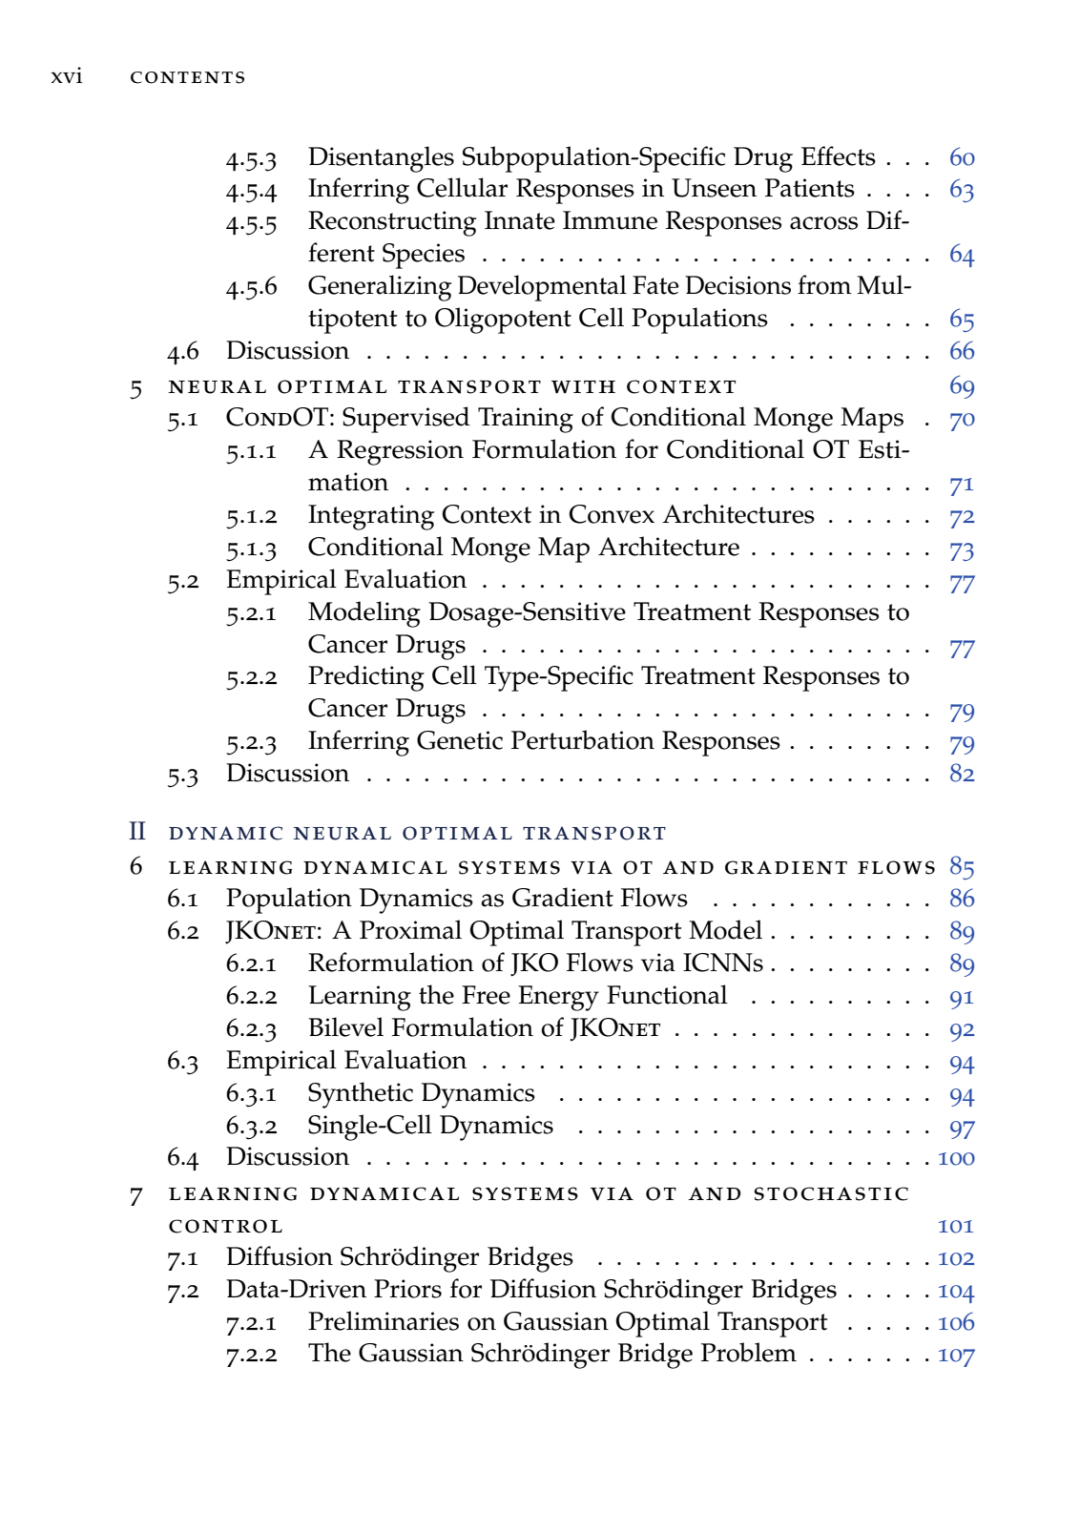 博士论文 | 神经最优传输用于动力学系统：生物医学中的方法与应用 239页